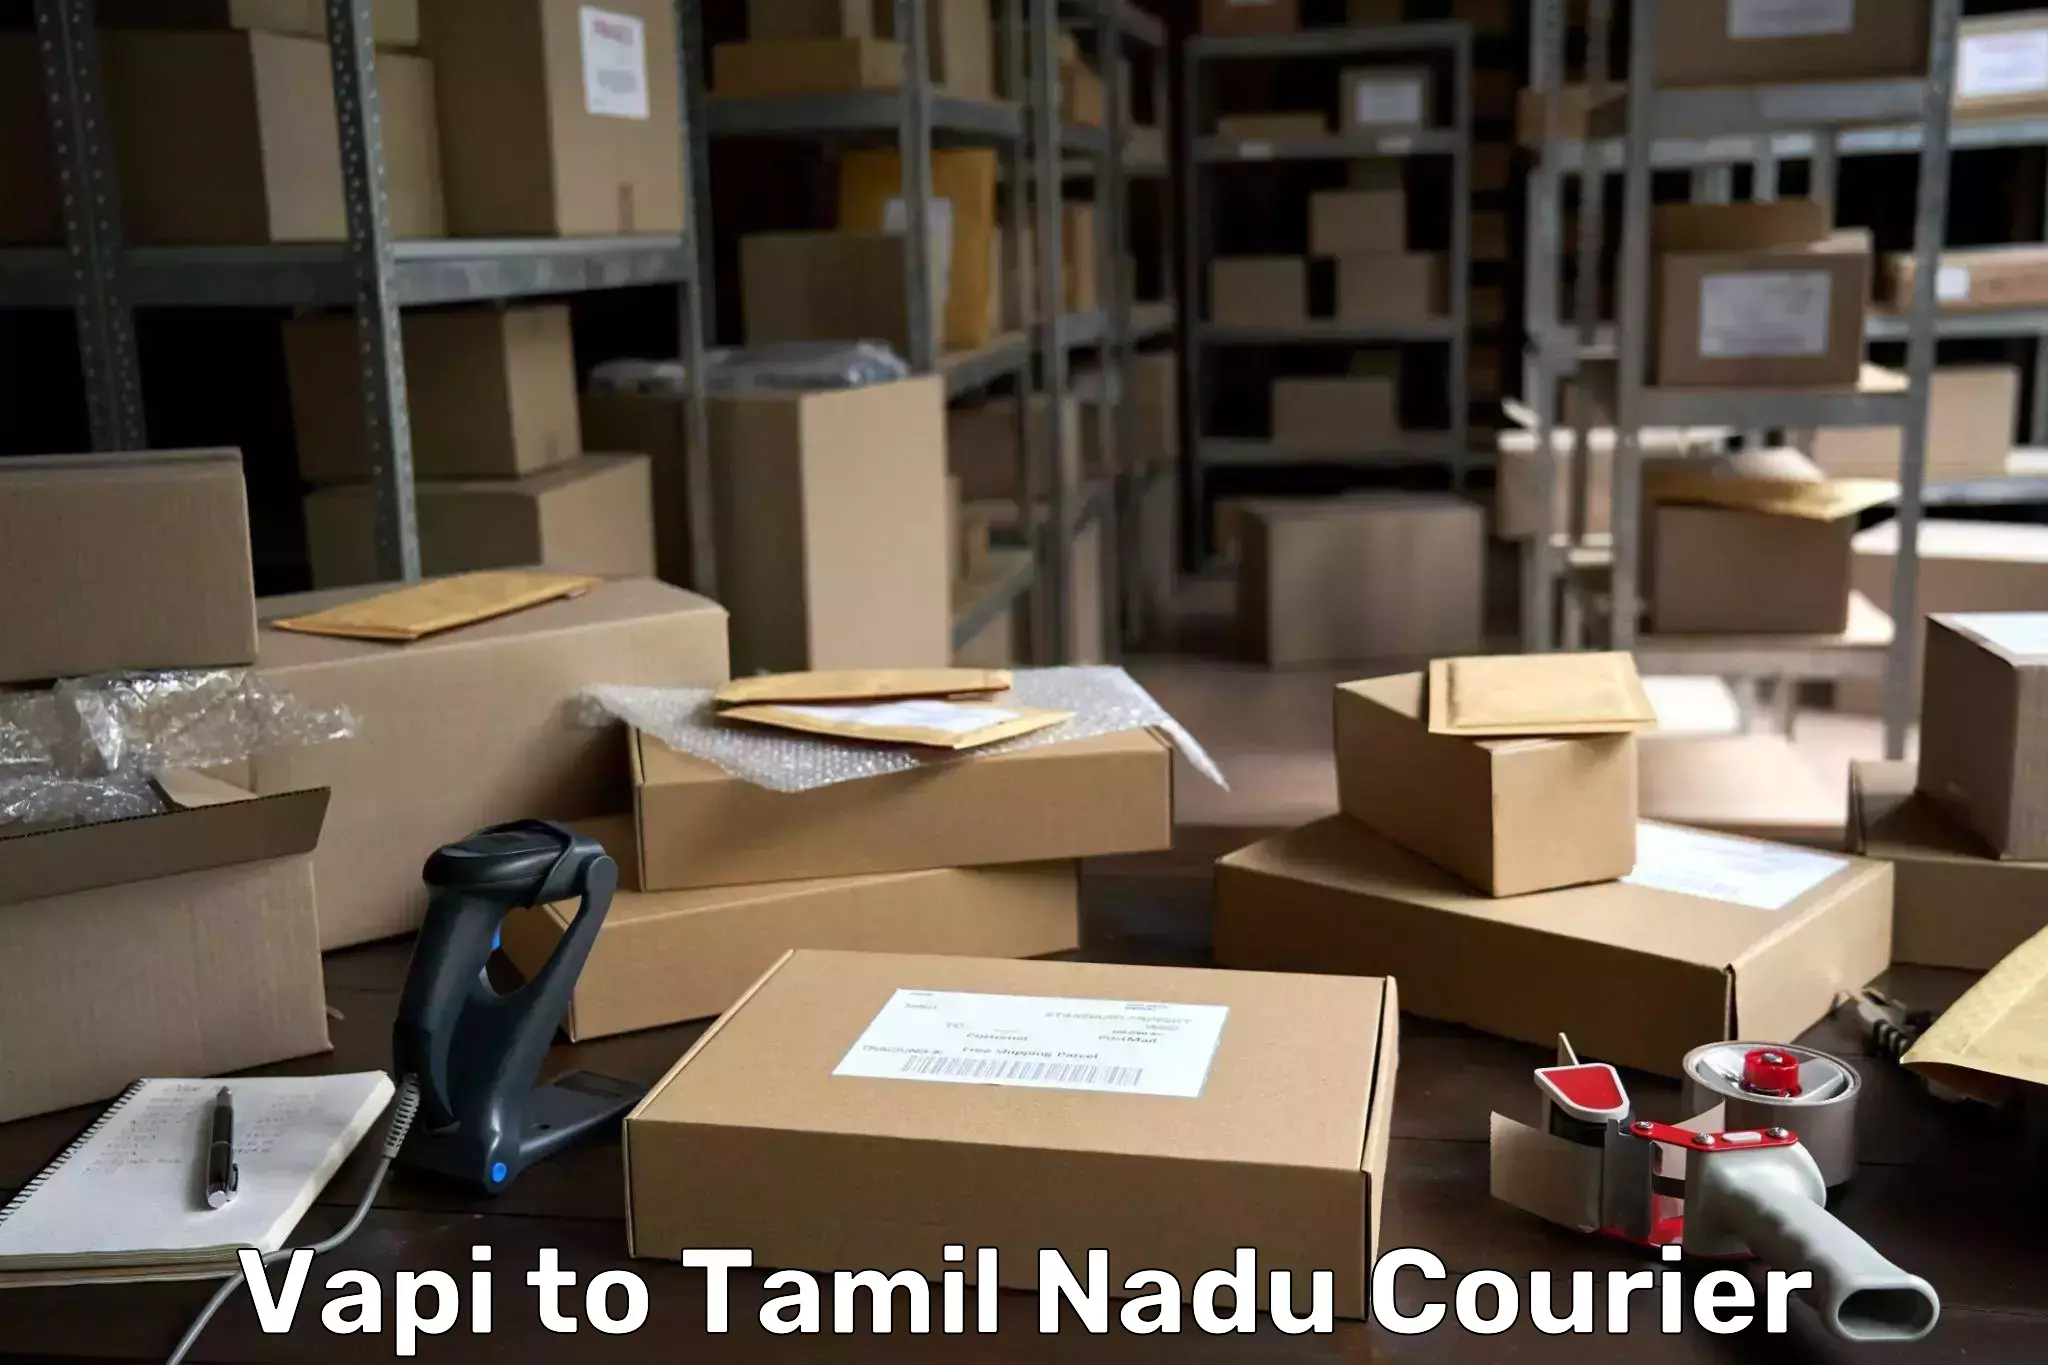 Efficient parcel delivery Vapi to Chennai Port